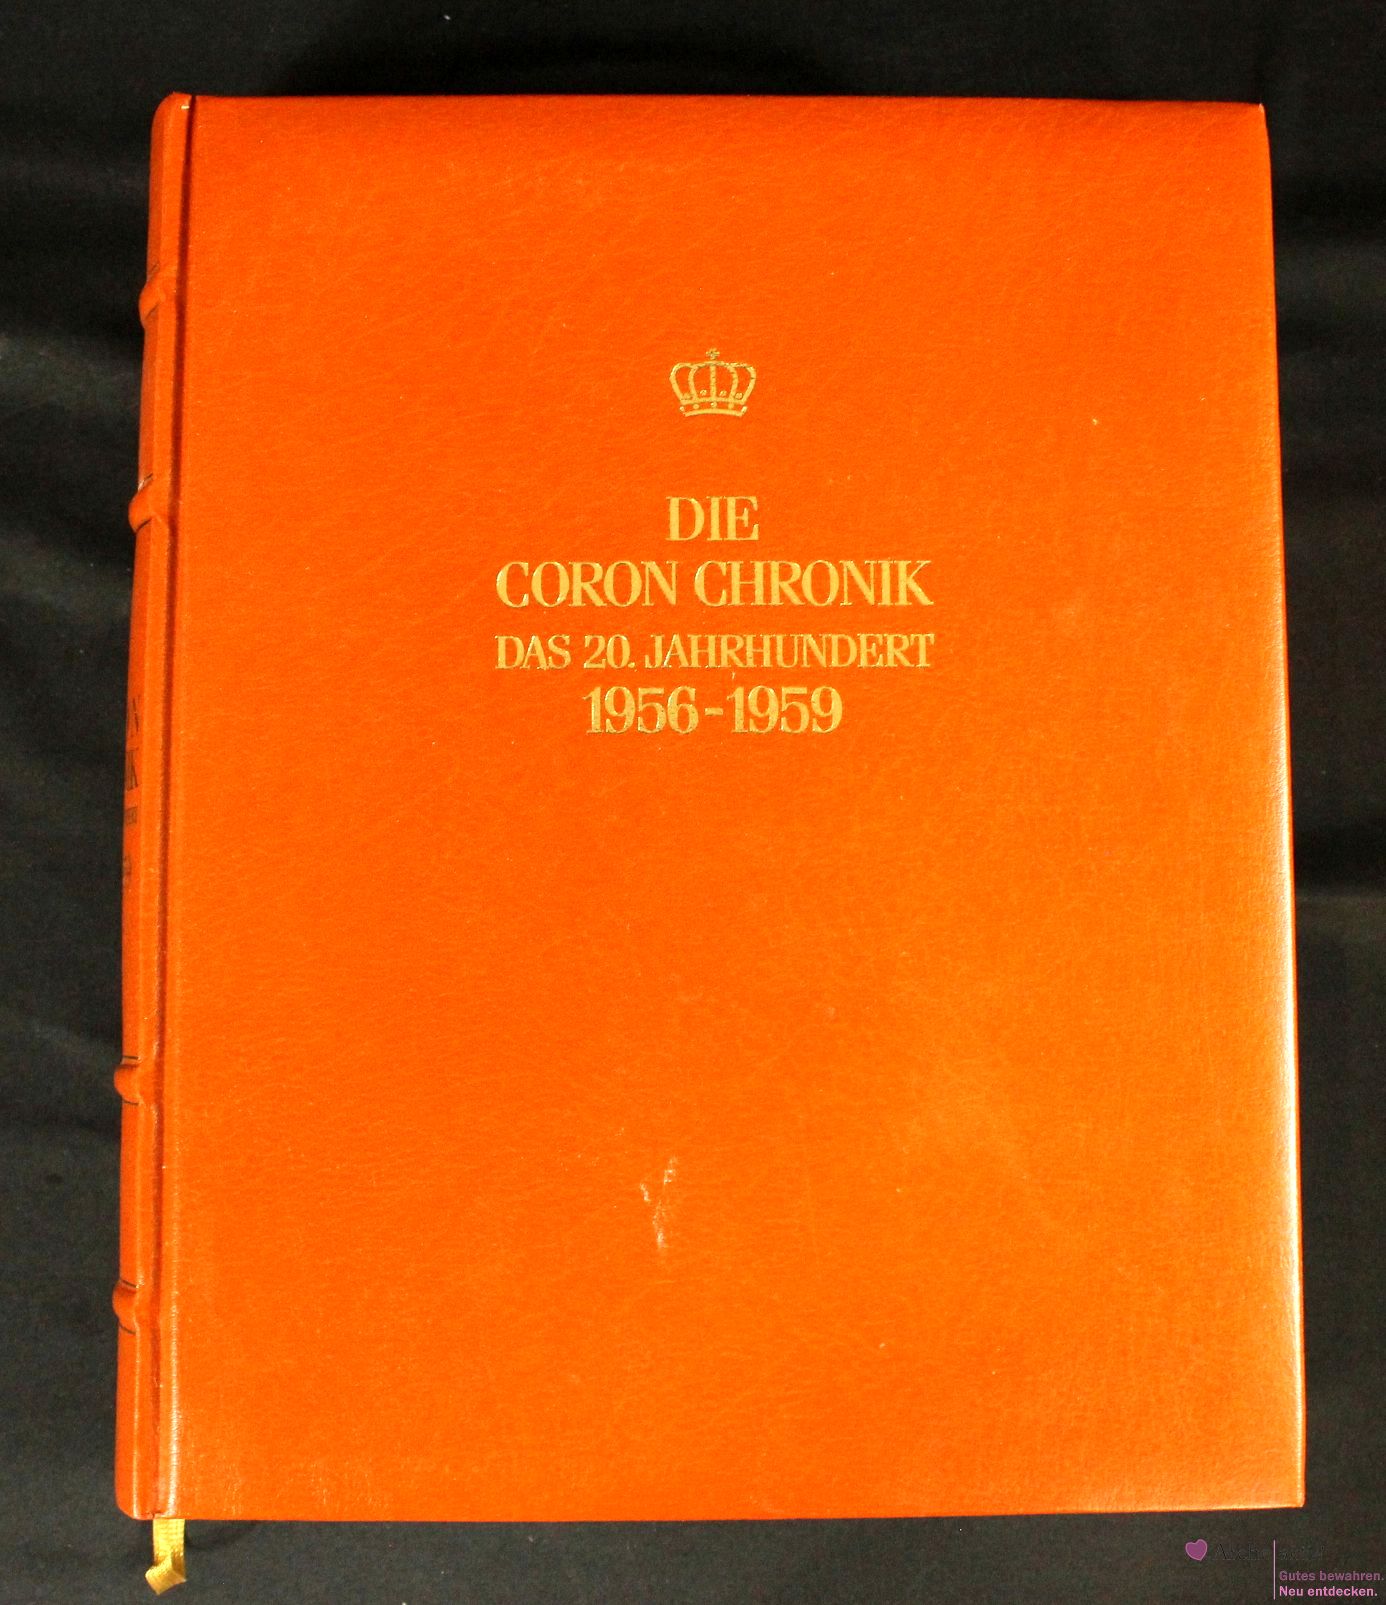 Die Coron Chronik - Das 20. Jahrhundert 1956 - 1959, Band 15, mit Gold-Kopfschnitt, gebraucht